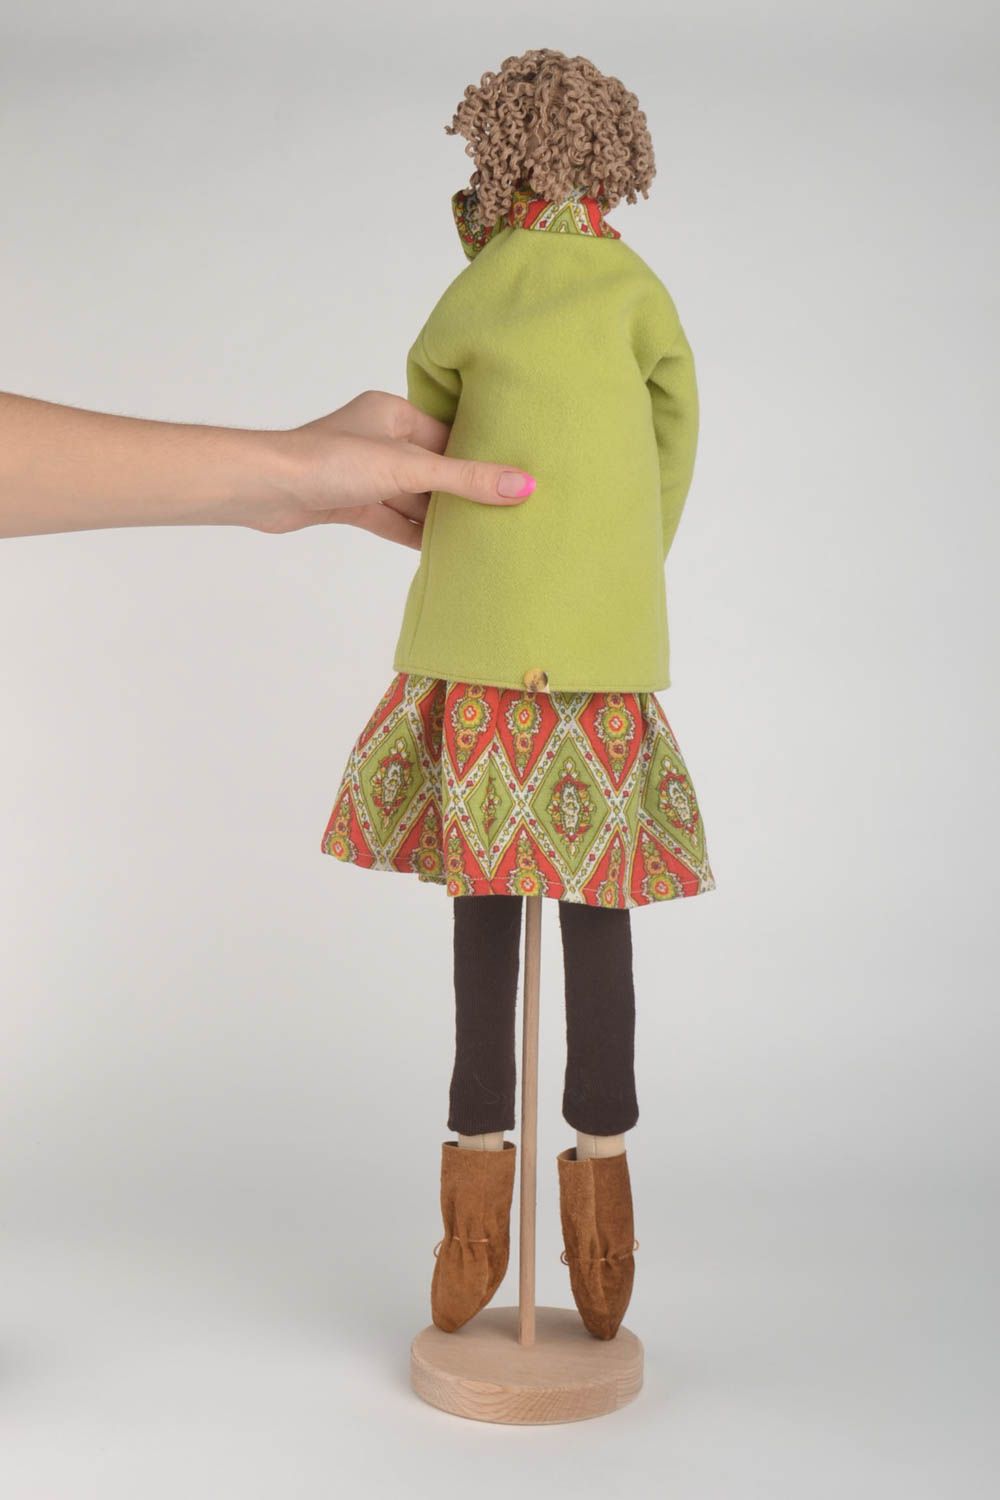 Kuschel Puppe handgefertigt Deko Puppe grün Geschenk für Erwachsene foto 4